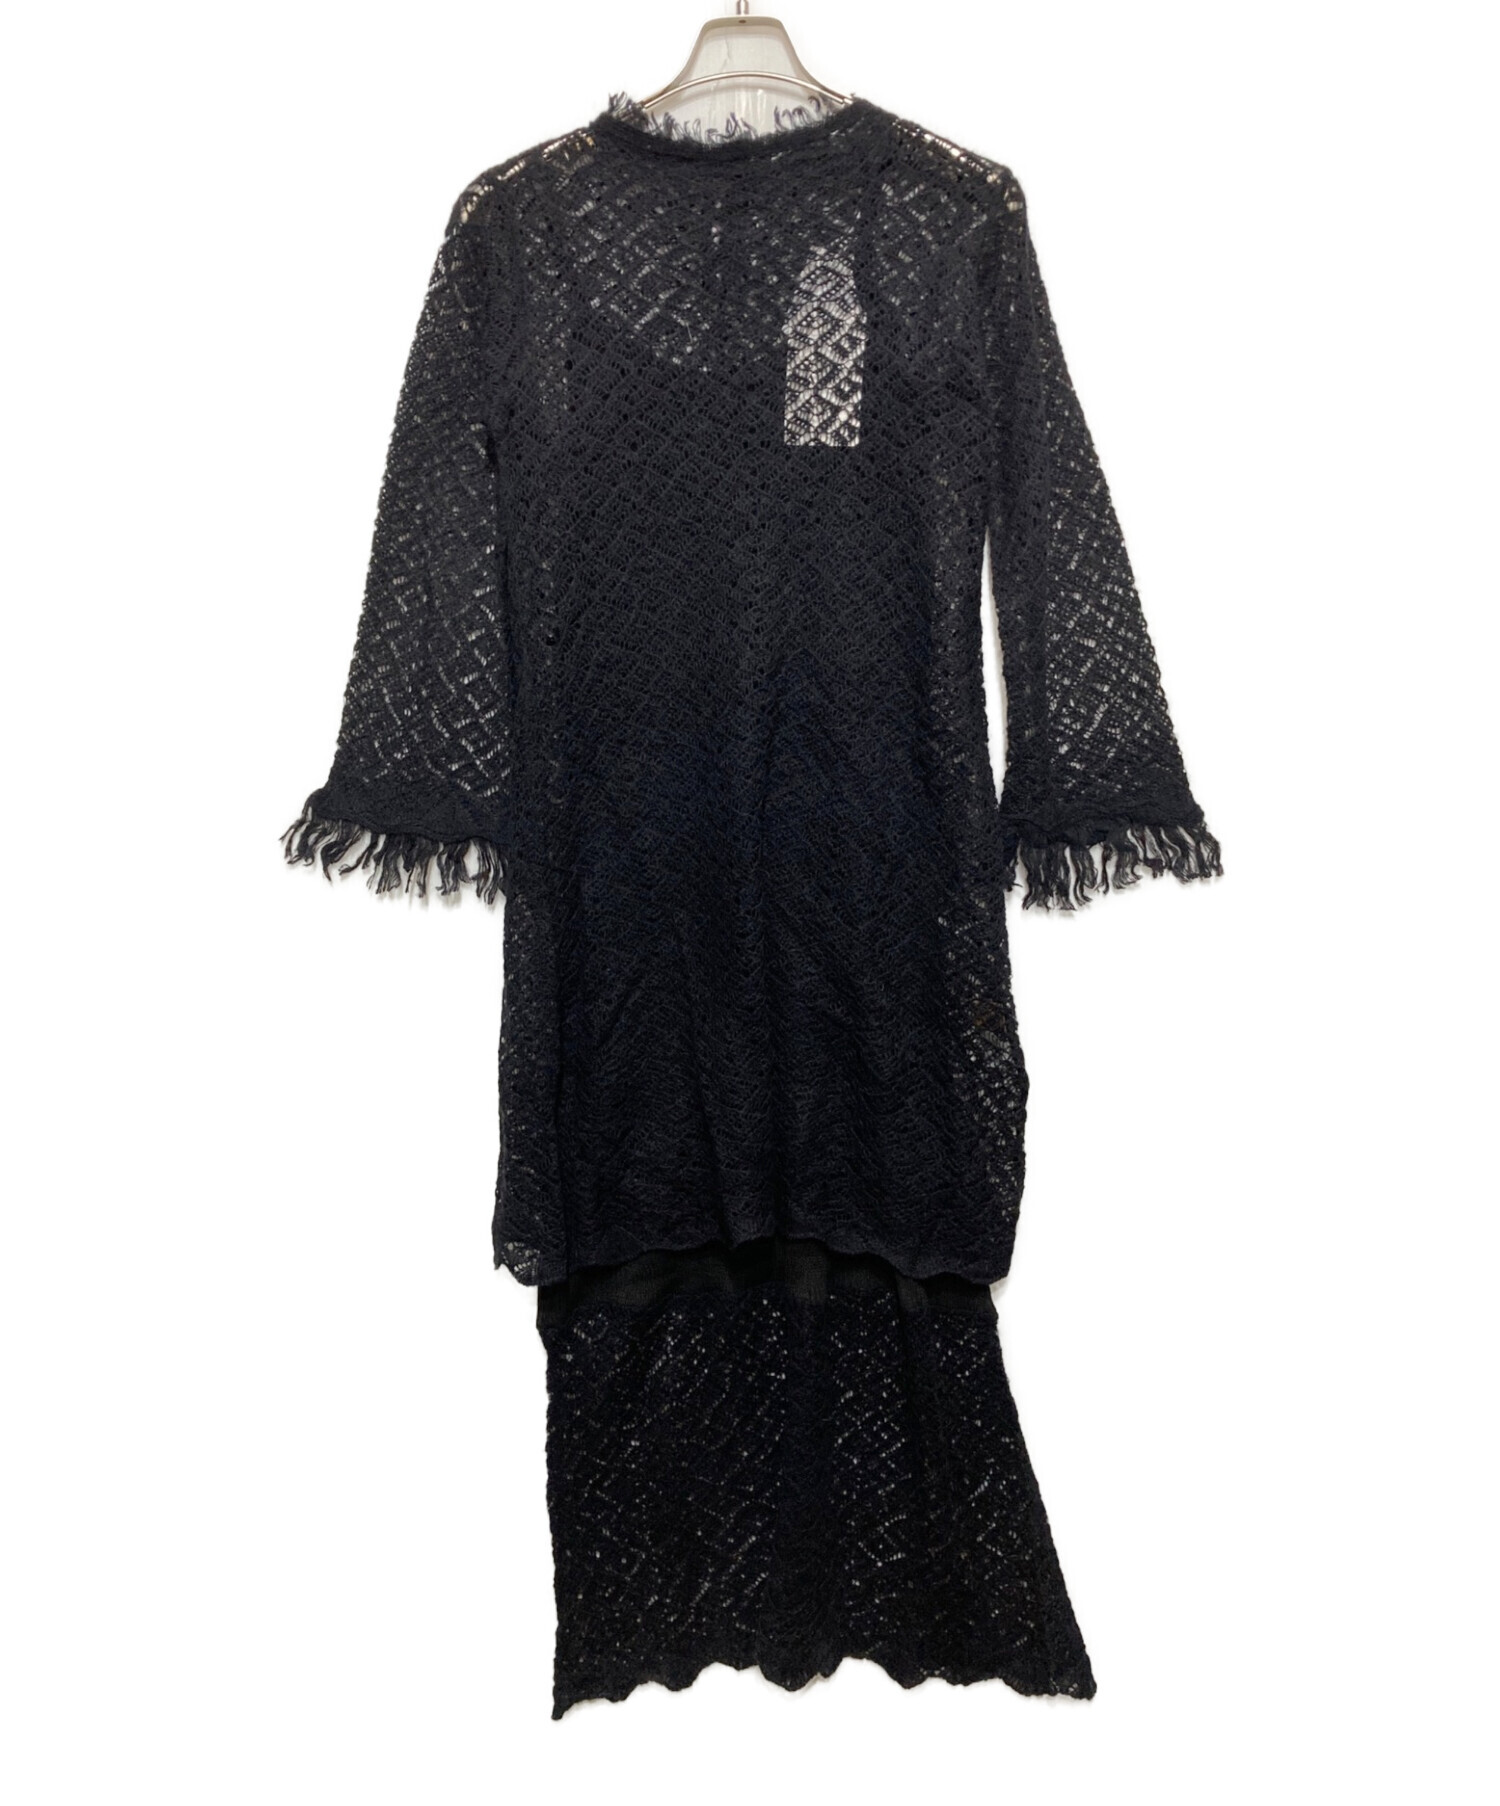 Ameri VINTAGE (アメリヴィンテージ) LAYERED KNIT DRESS ブラック サイズ:Ⅿ